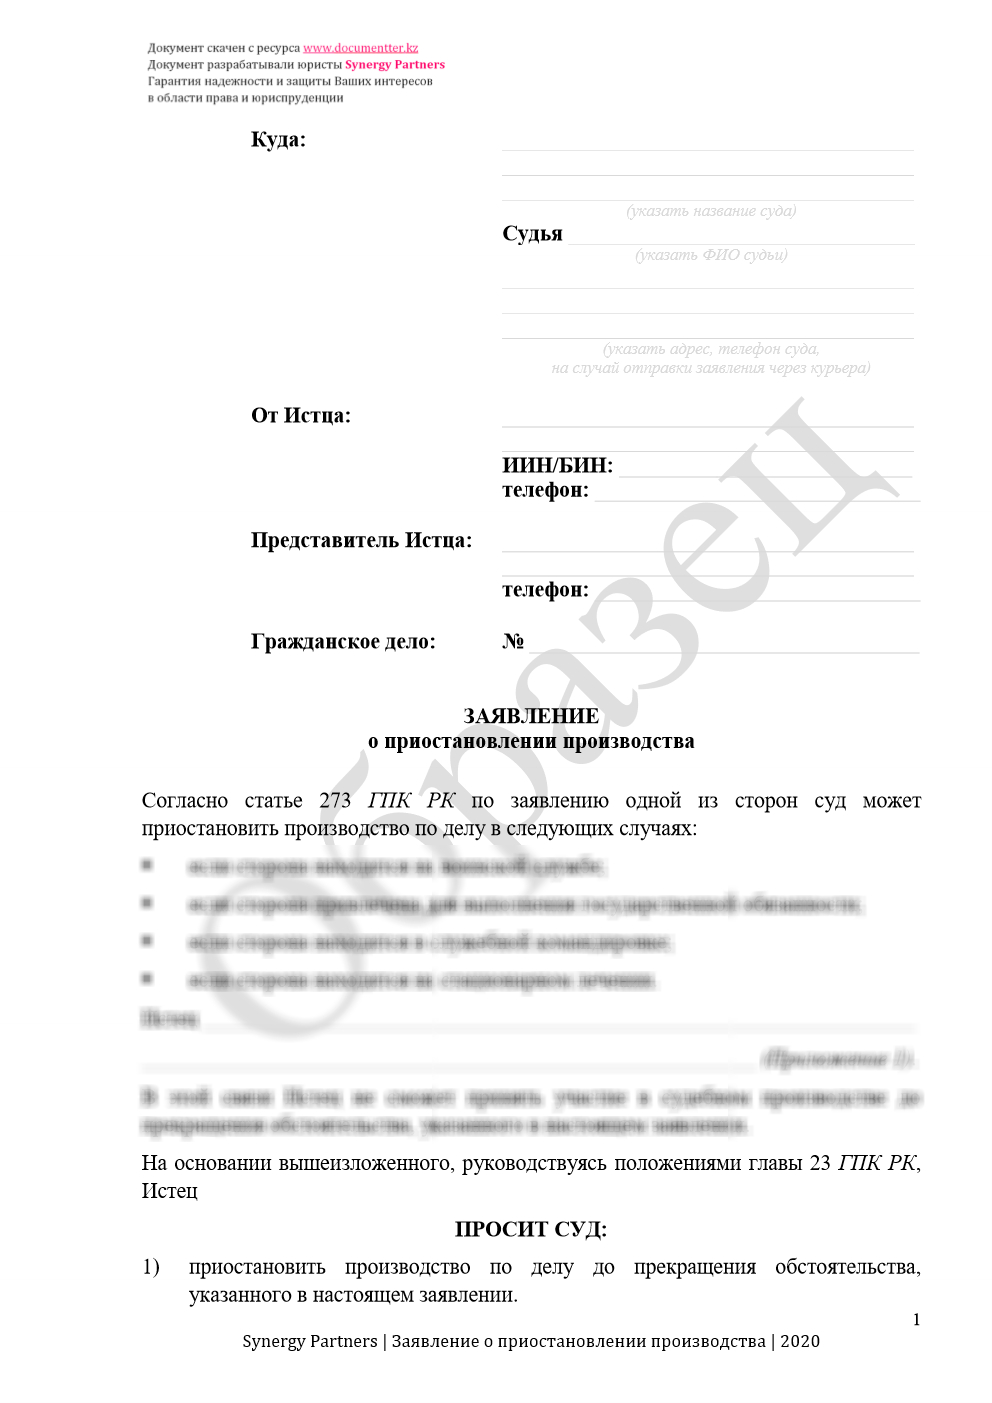 Заявление о приостановлении производства при уважительной причине 4 | documentter.kz в Казахстане 